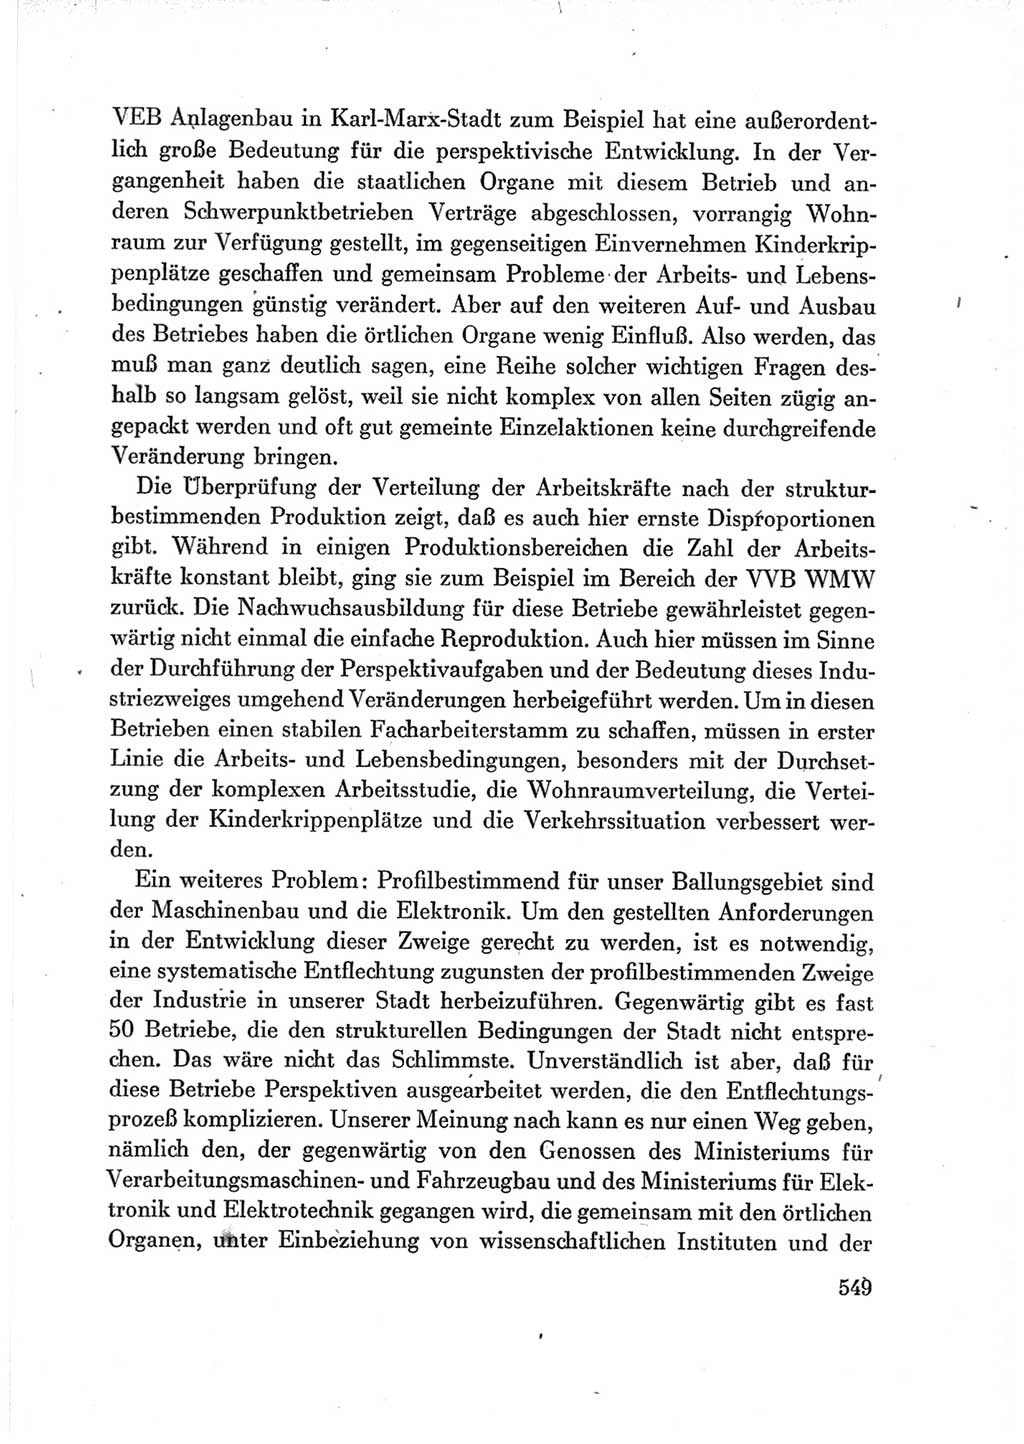 Protokoll der Verhandlungen des Ⅶ. Parteitages der Sozialistischen Einheitspartei Deutschlands (SED) [Deutsche Demokratische Republik (DDR)] 1967, Band Ⅲ, Seite 549 (Prot. Verh. Ⅶ. PT SED DDR 1967, Bd. Ⅲ, S. 549)